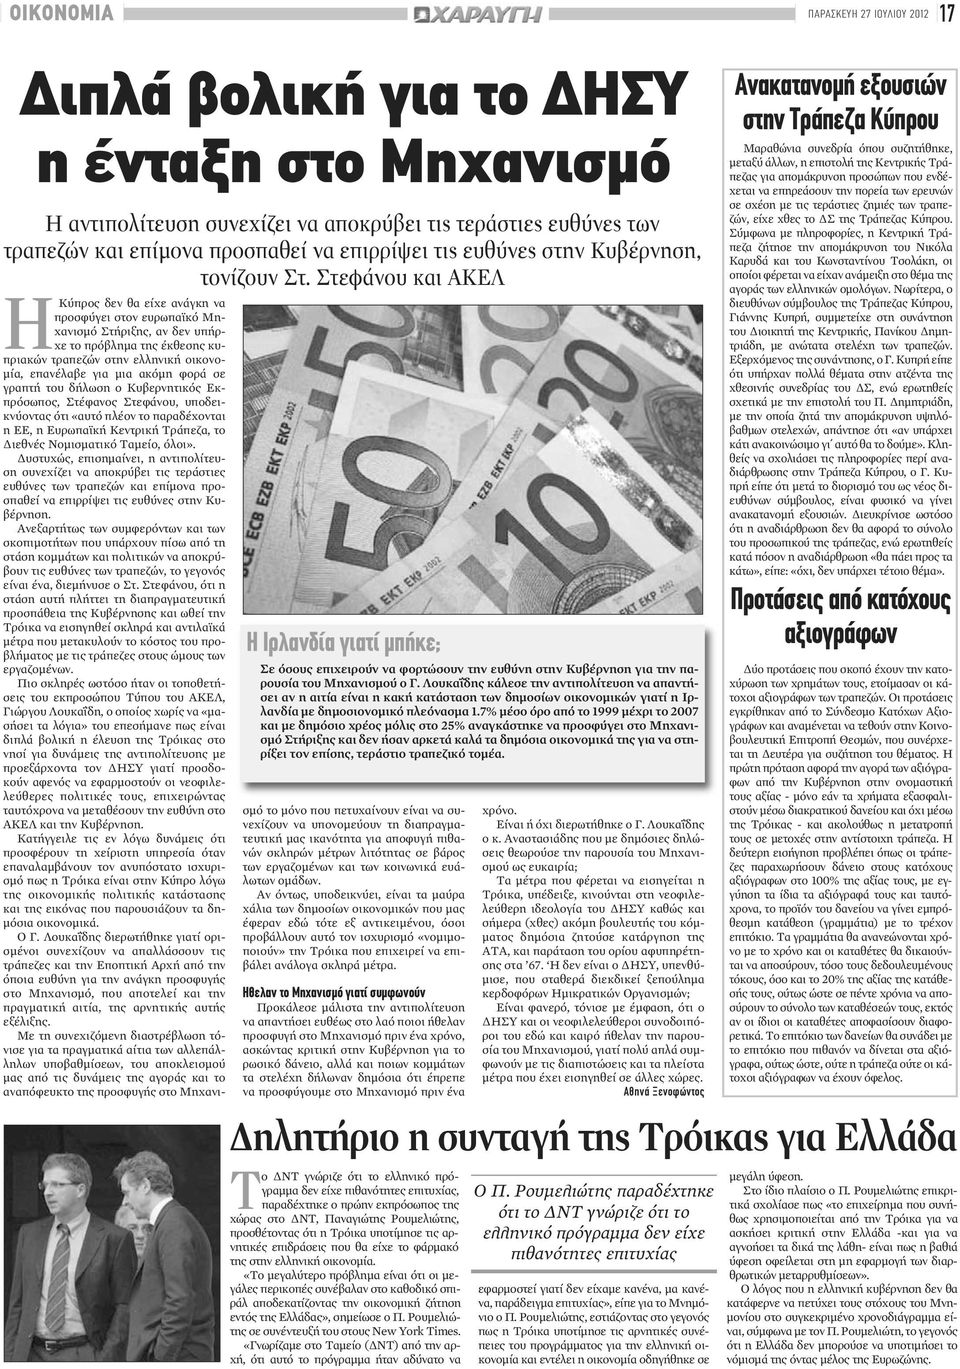 Στεφάνου και ΑΚΕΛ ΗΚύπρος δεν θα είχε ανάγκη να προσφύγει στον ευρωπαϊκό Μηχανισμό Στήριξης, αν δεν υπήρχε το πρόβλημα της έκθεσης κυπριακών τραπεζών στην ελληνική οικονομία, επανέλαβε για μια ακόμη